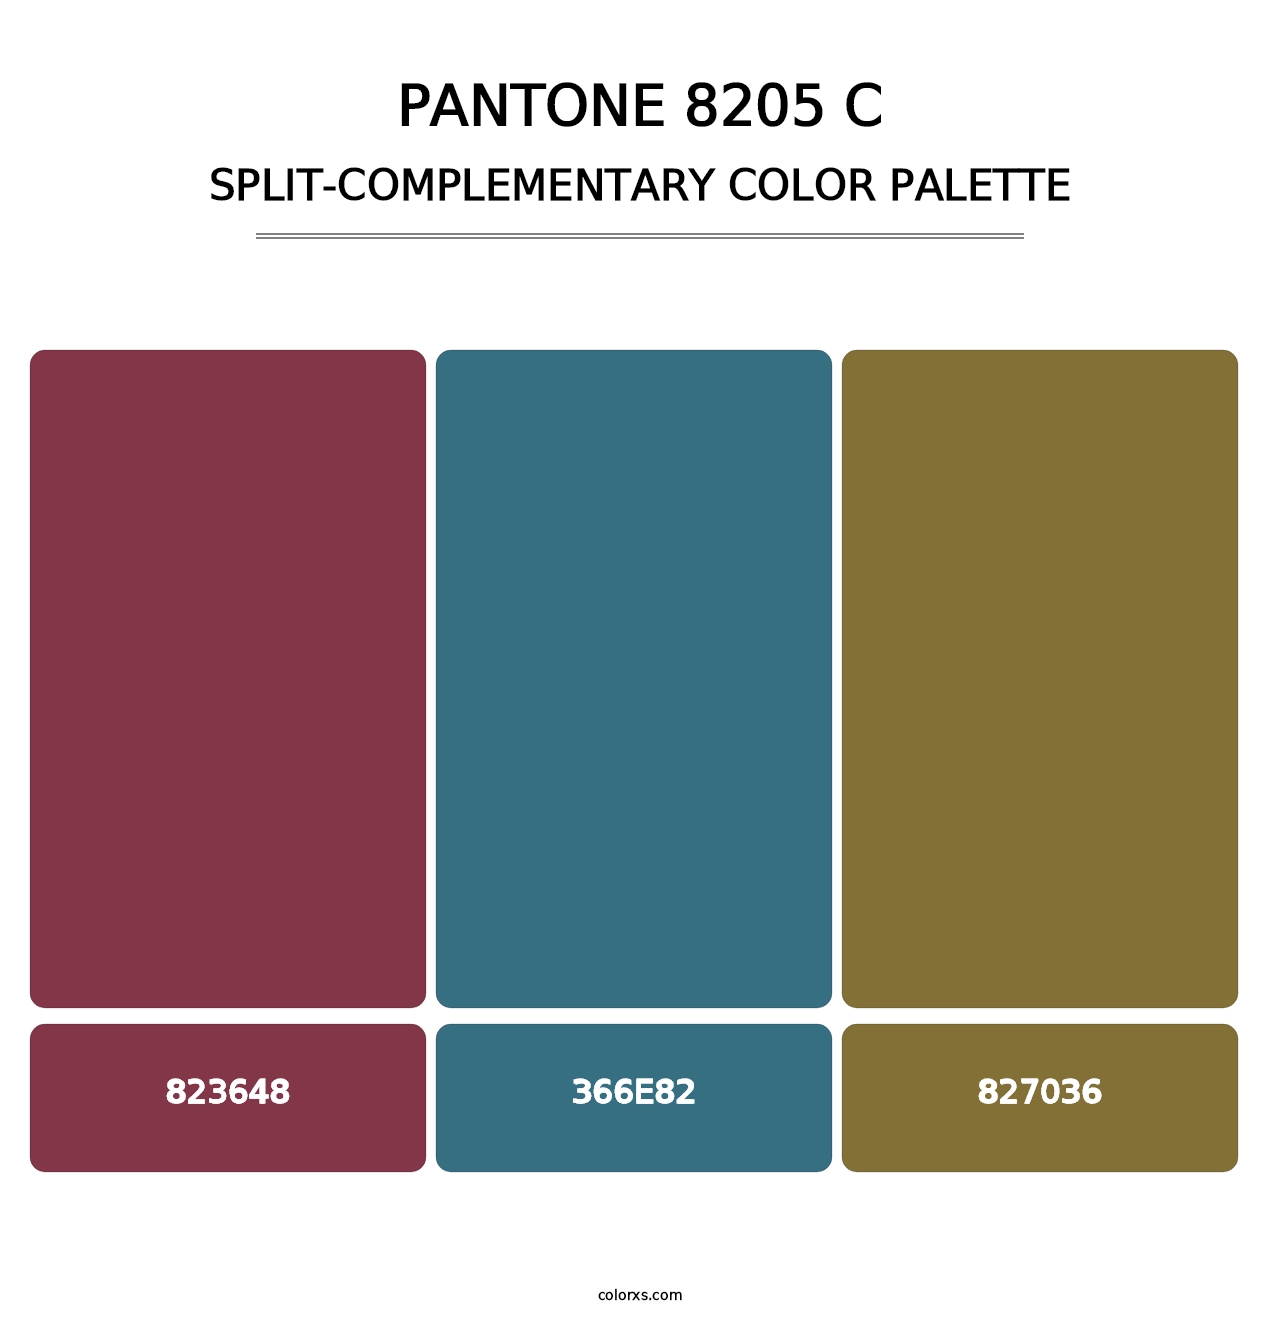 PANTONE 8205 C - Split-Complementary Color Palette